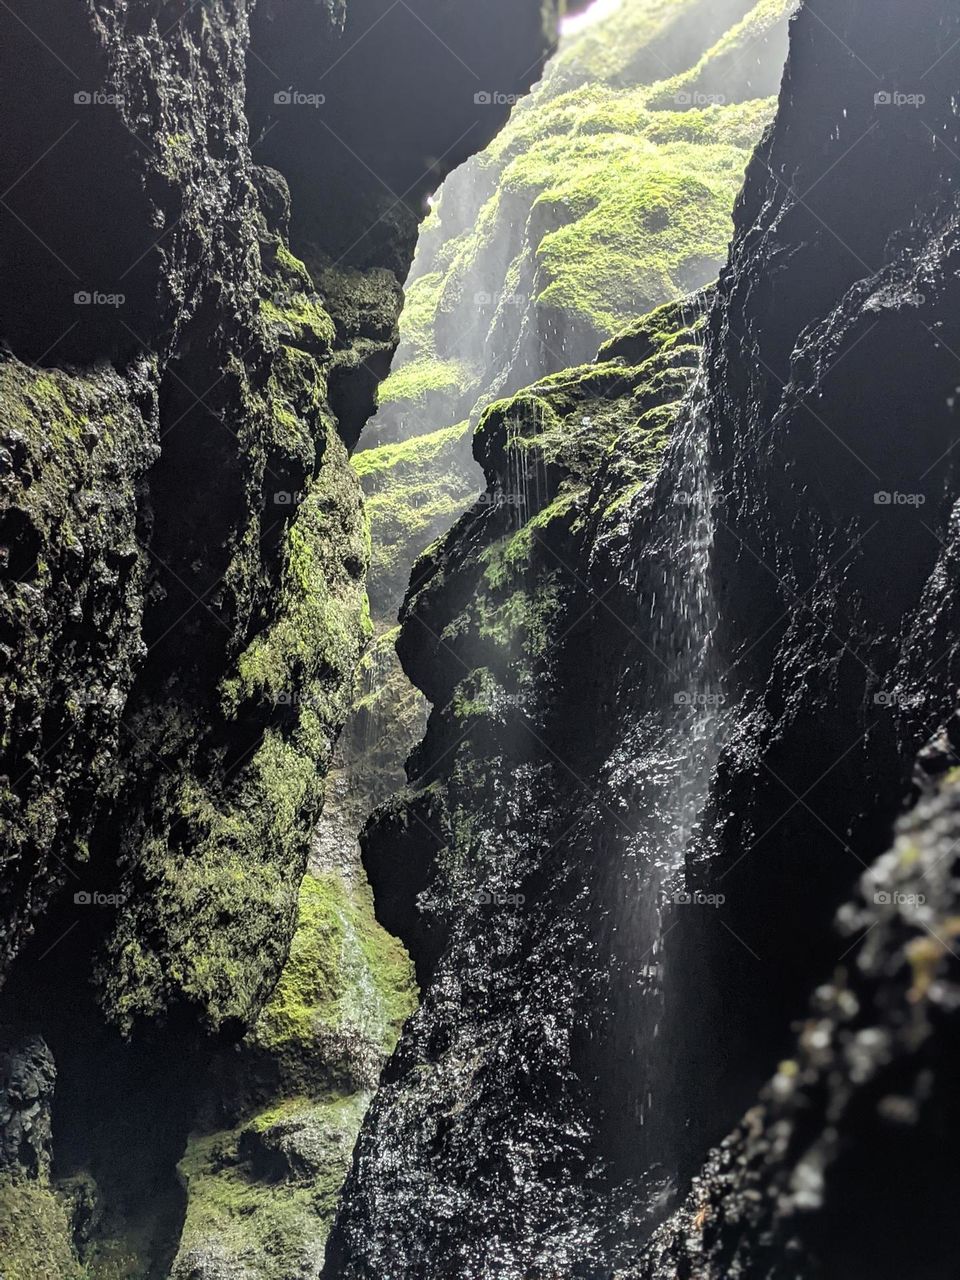 Iceland canyon